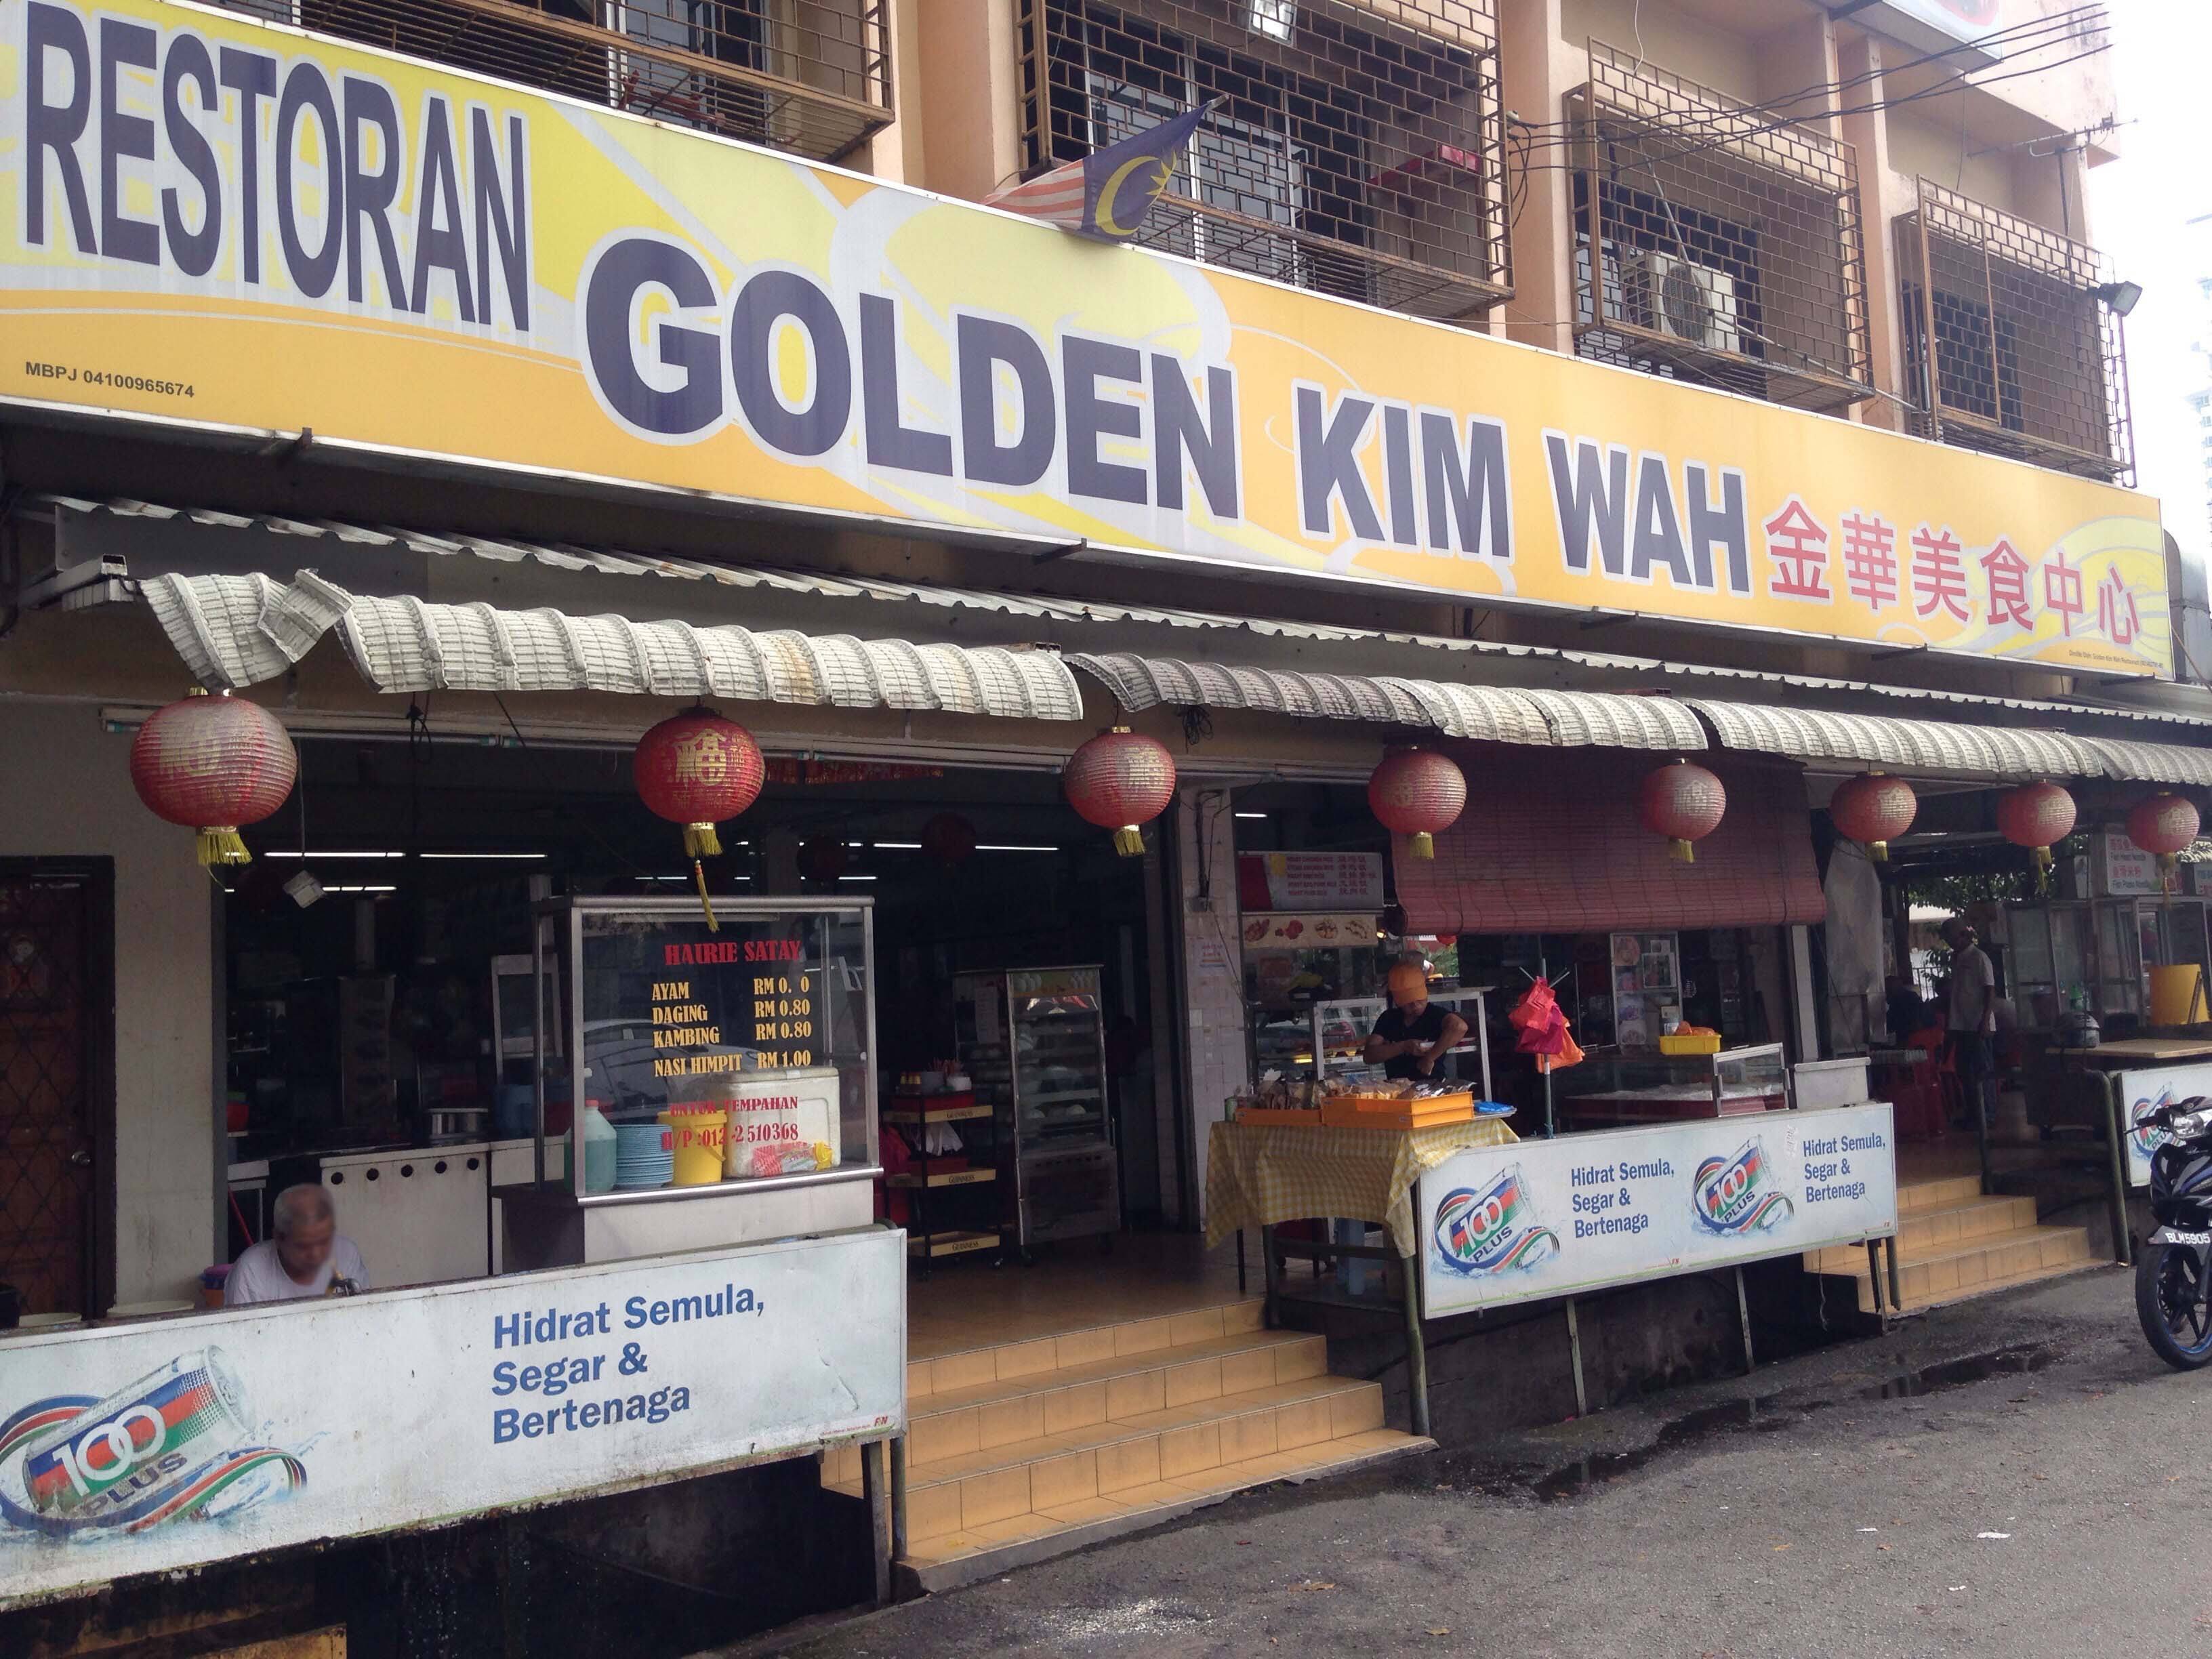 Restoran Golden Kim Wah, Damansara Utama, Selangor